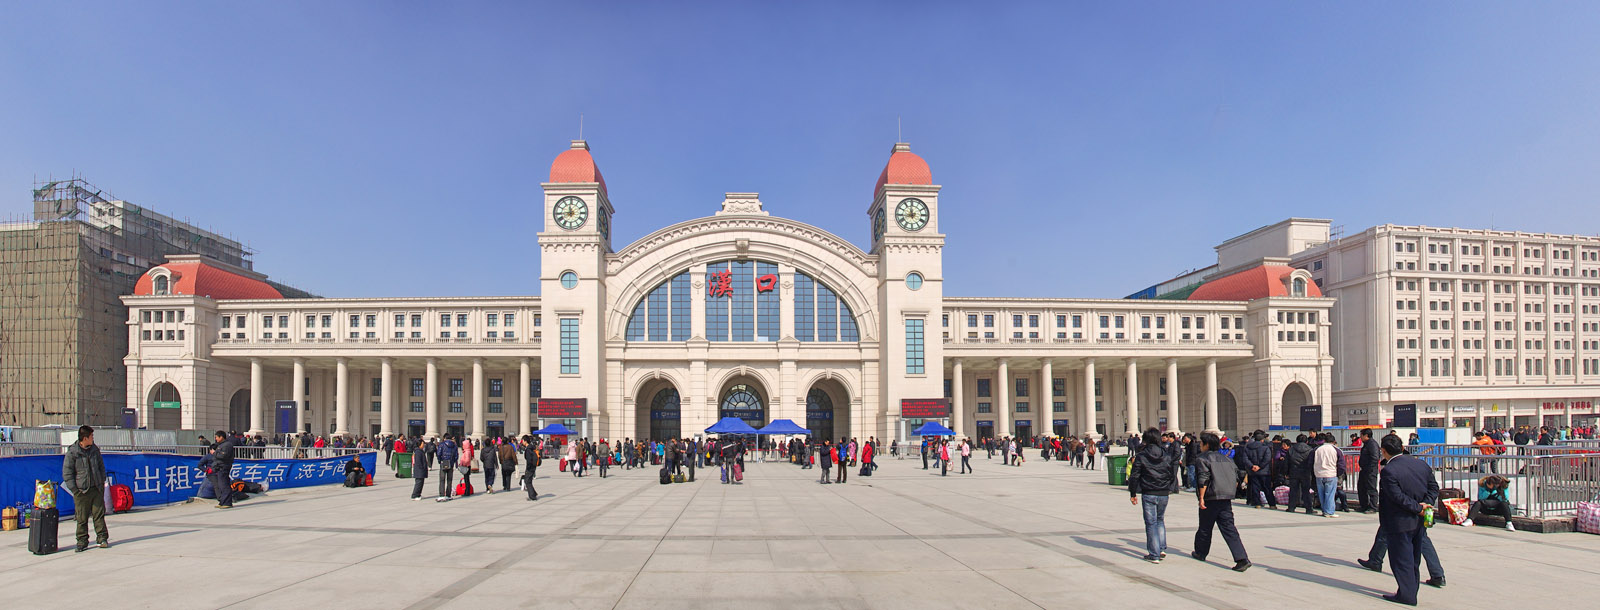 5月文明指数|汉口火车站居首位 汉阳客运中心垫